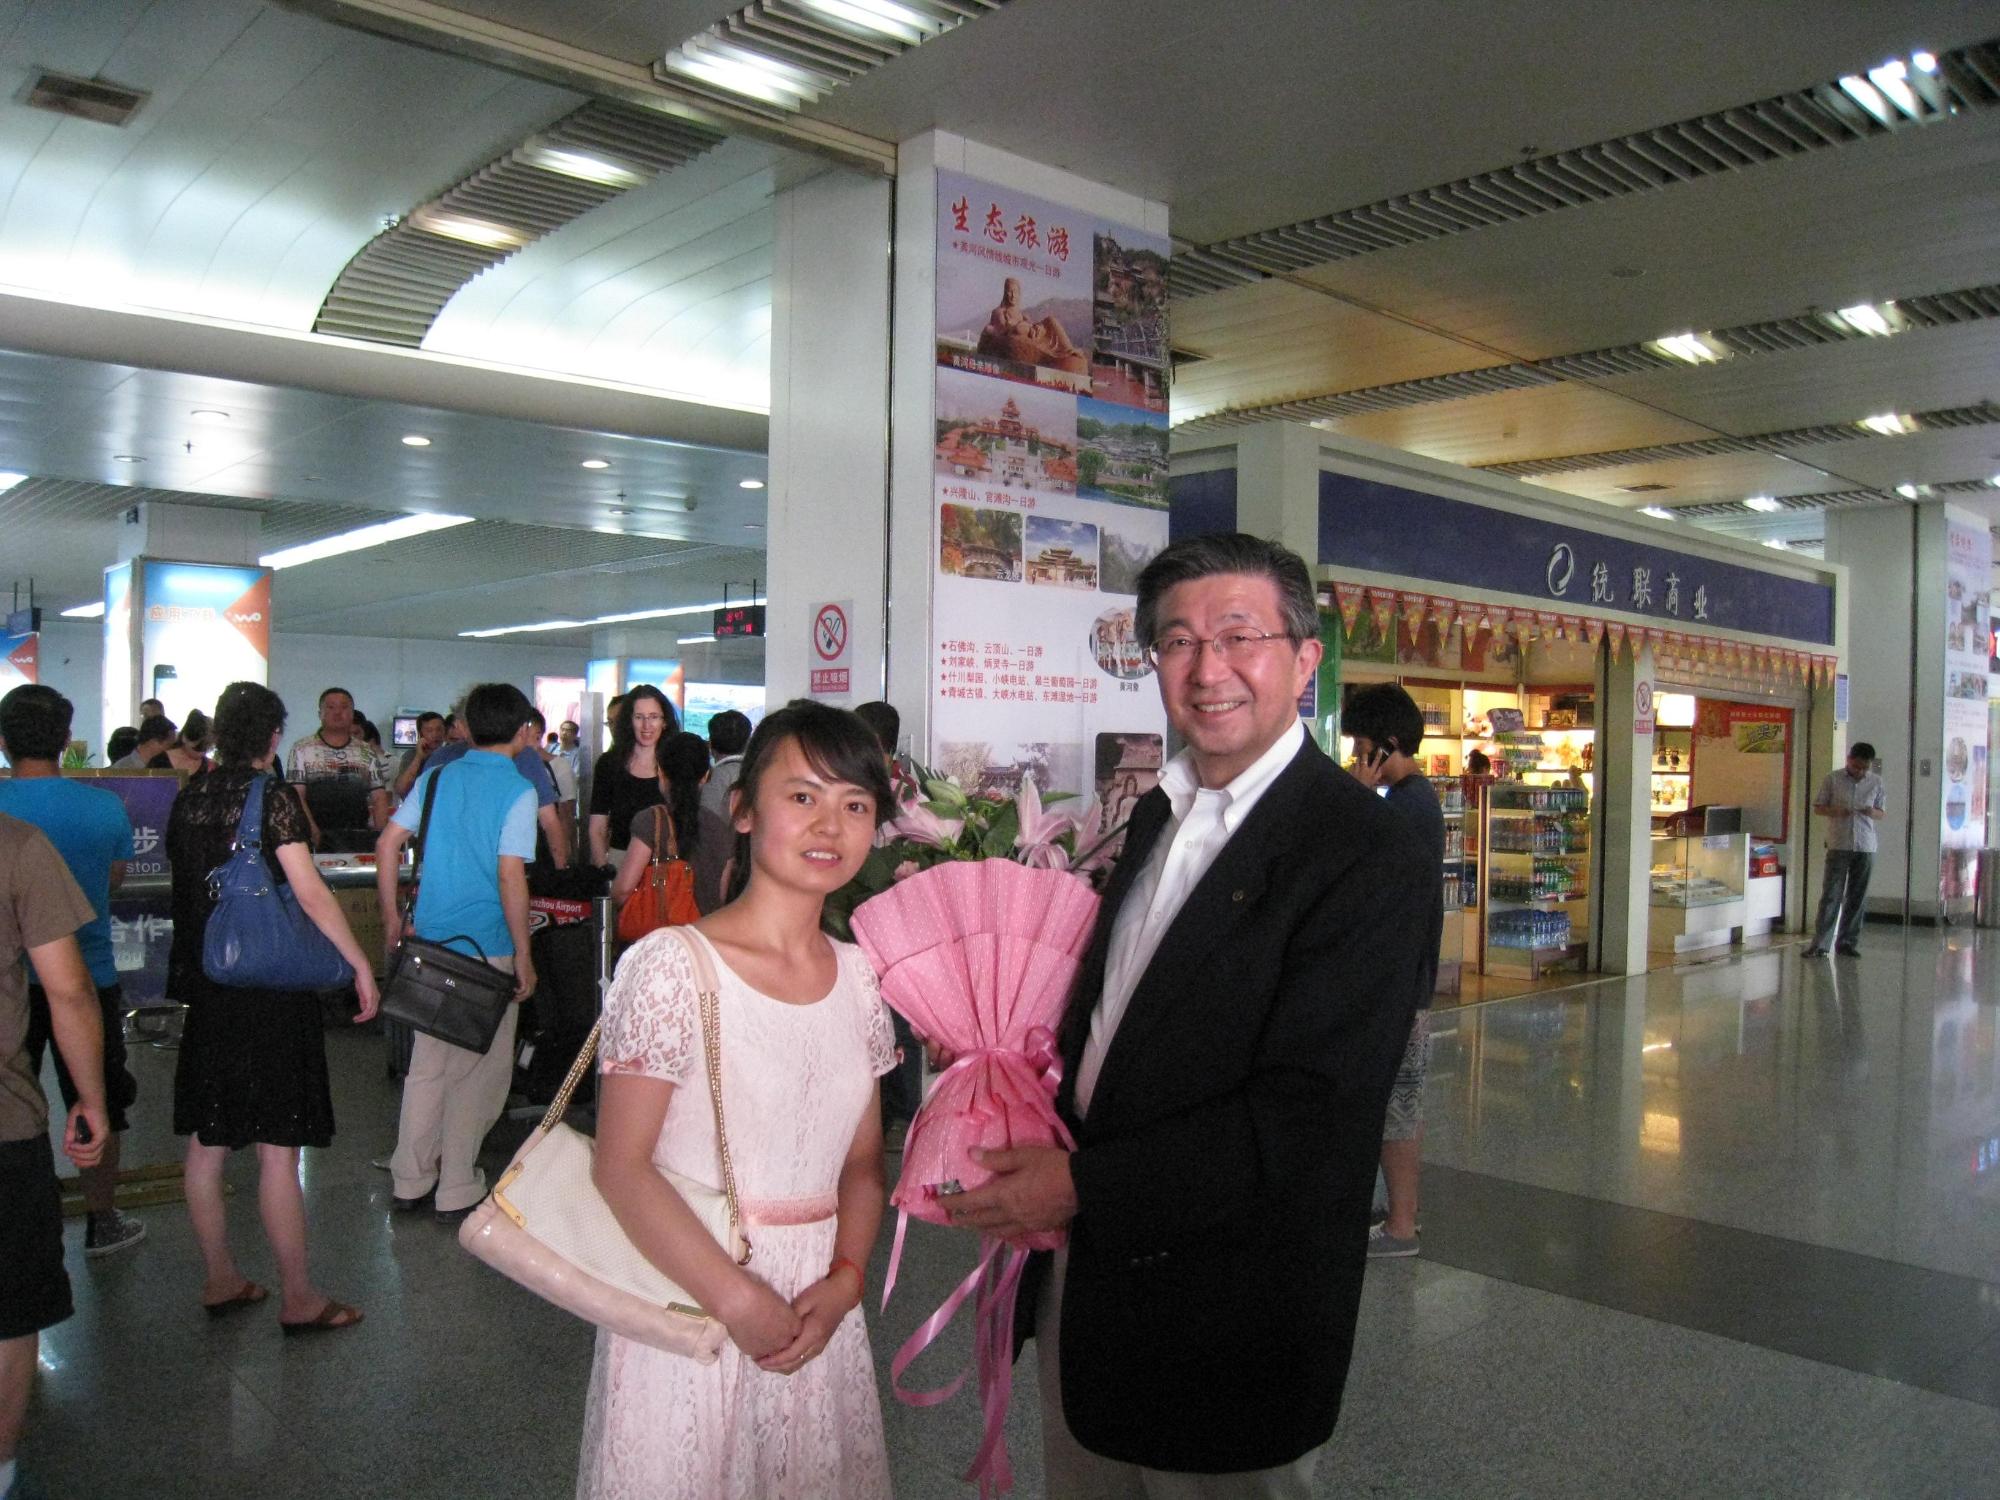 薄いピンクのワンピースを着た女学生とピンクの花束を持つスーツ姿の男性が笑顔で写っている記念写真